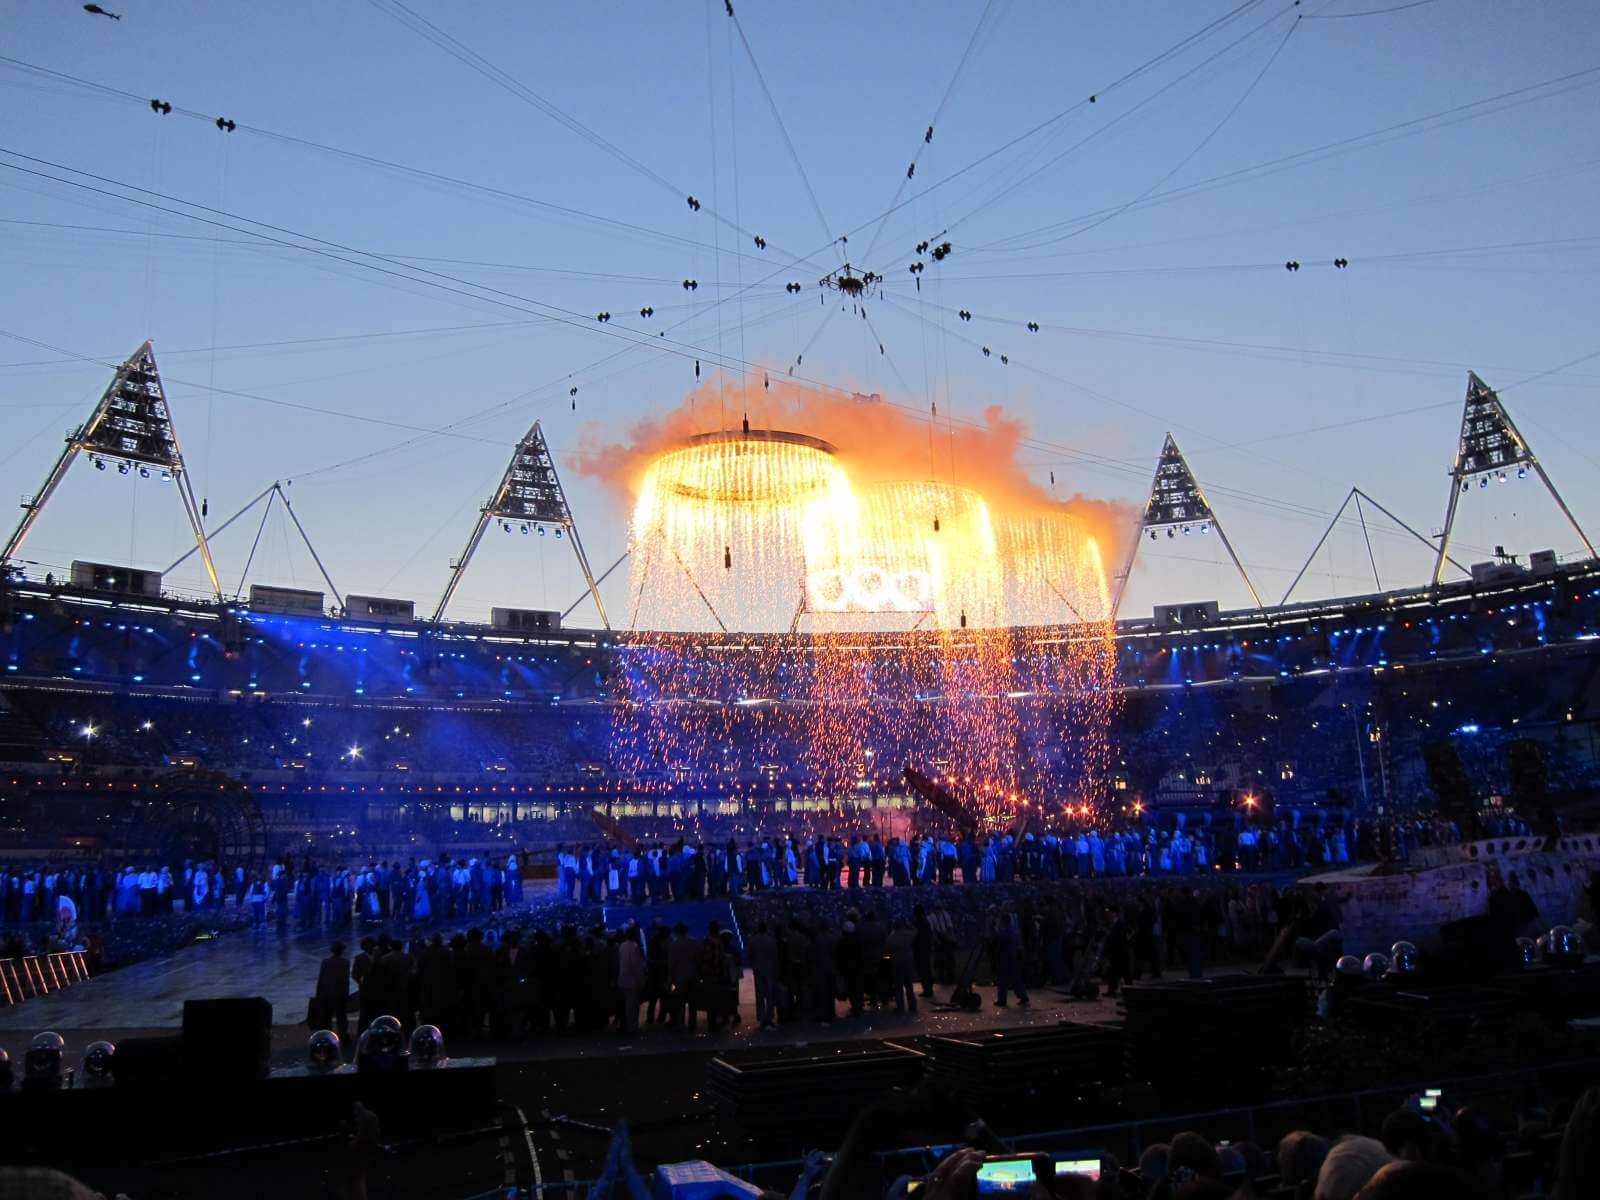 2012 London Olympics Opening Ceremony Rehearsal